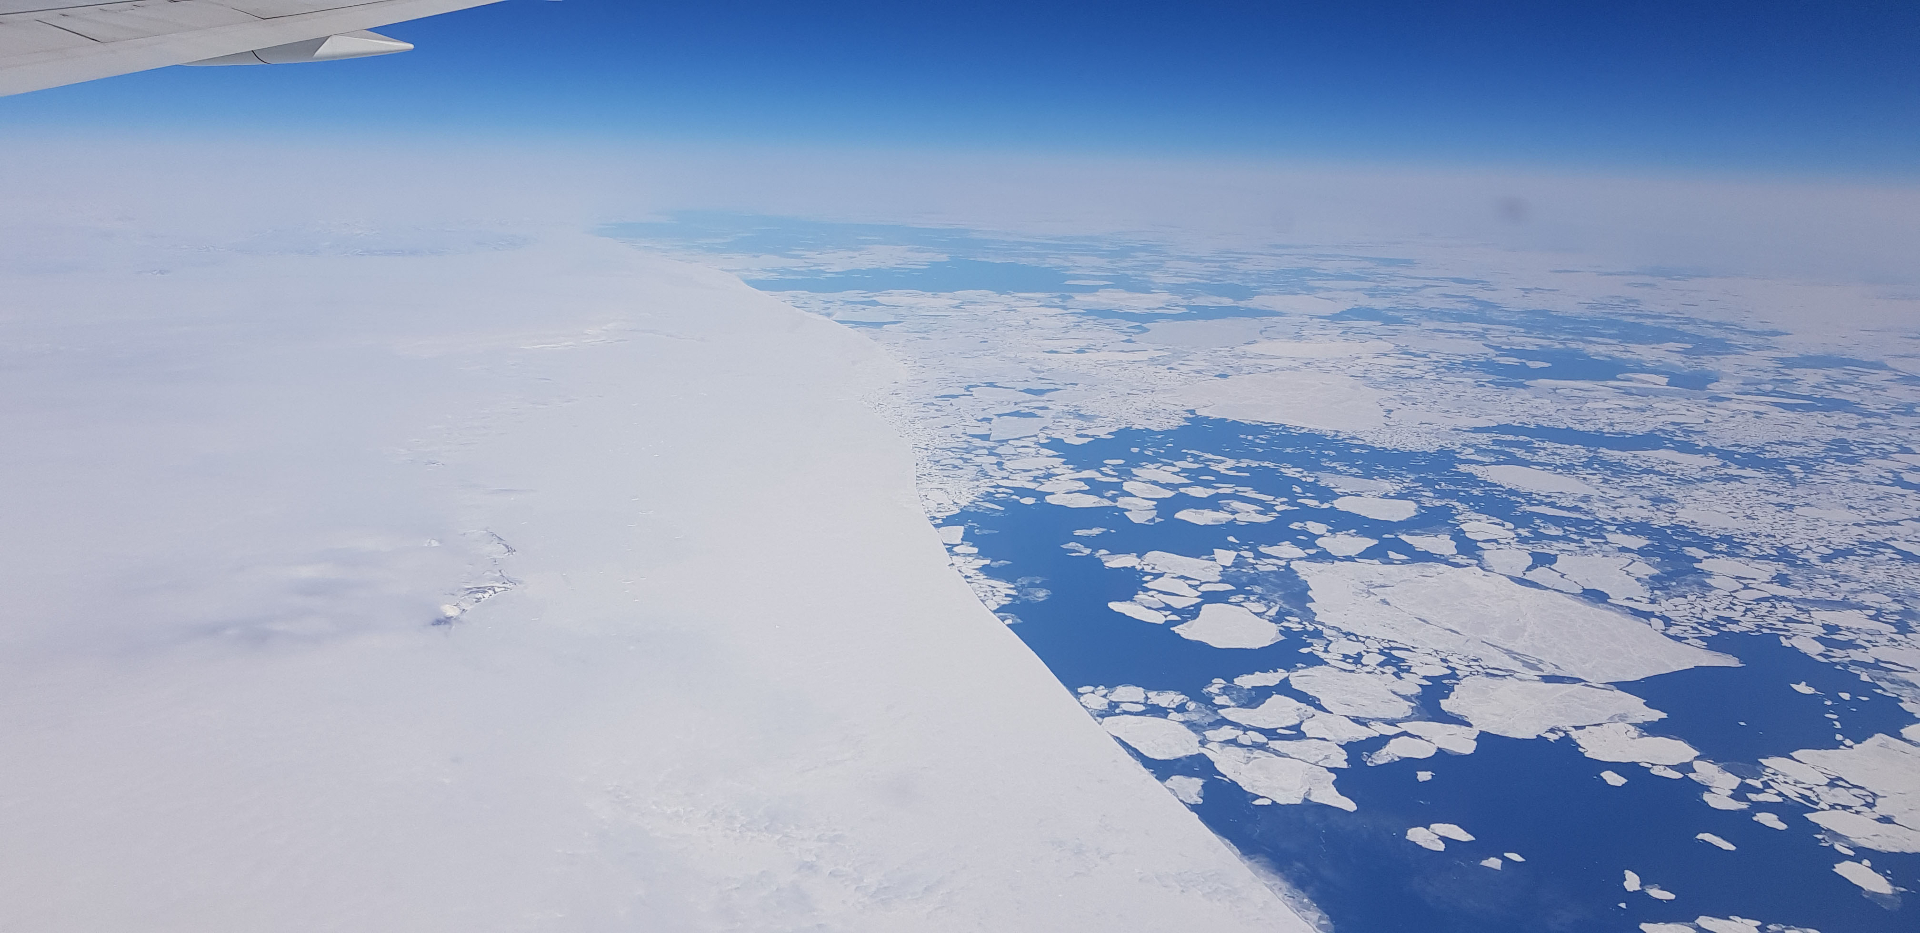 View from the airplane. Melting sea ice around Greenland. . Photo: Clazina Kwakernaak